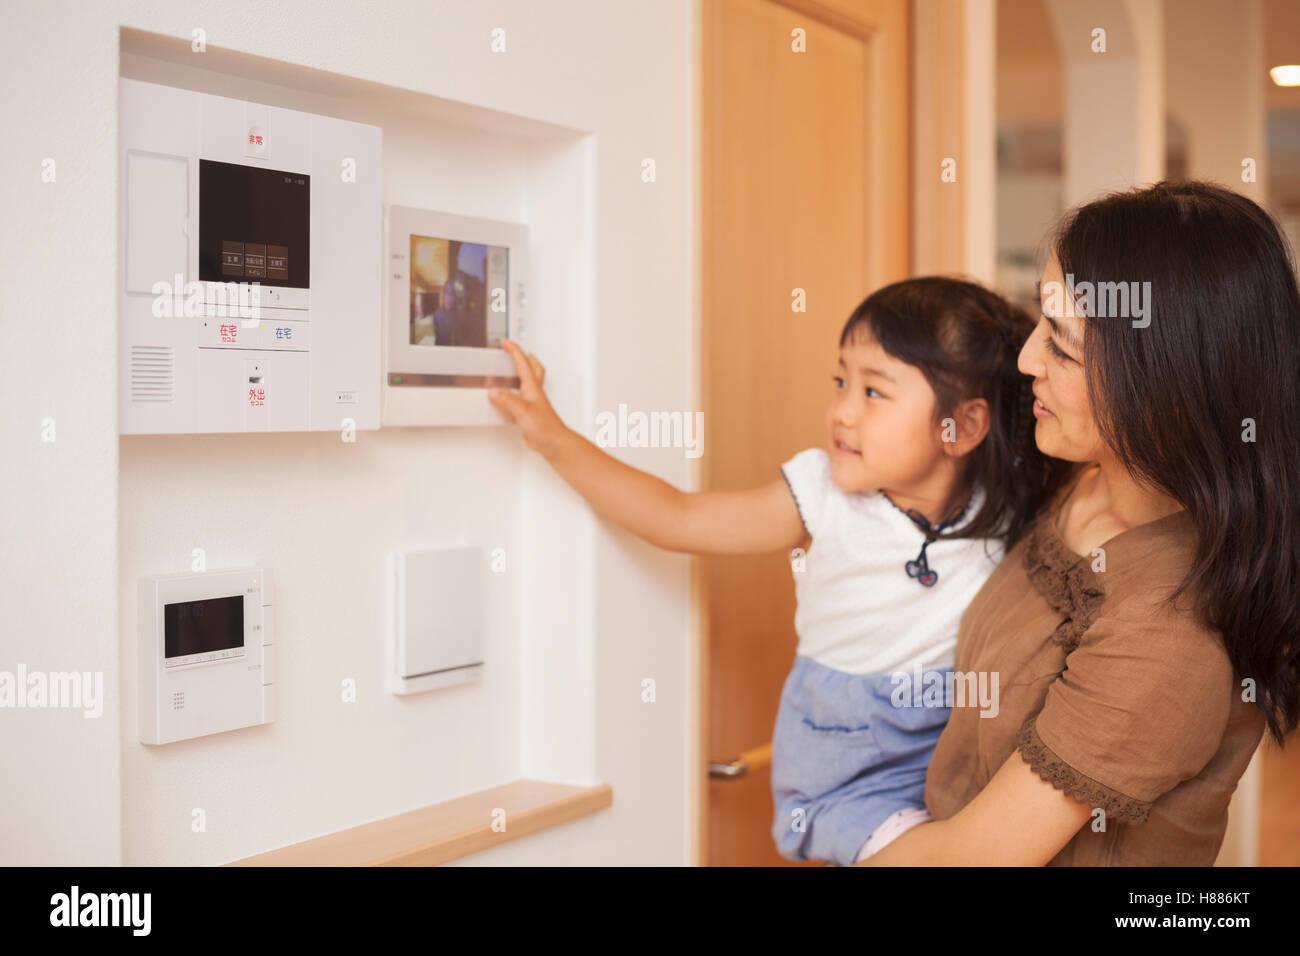 Haus der Familie. Eine Frau und ihre Tochter Blick auf einem Bildschirm an der Wand, Steuerelemente einer Türsprechanlage oder Tür. Stockfoto